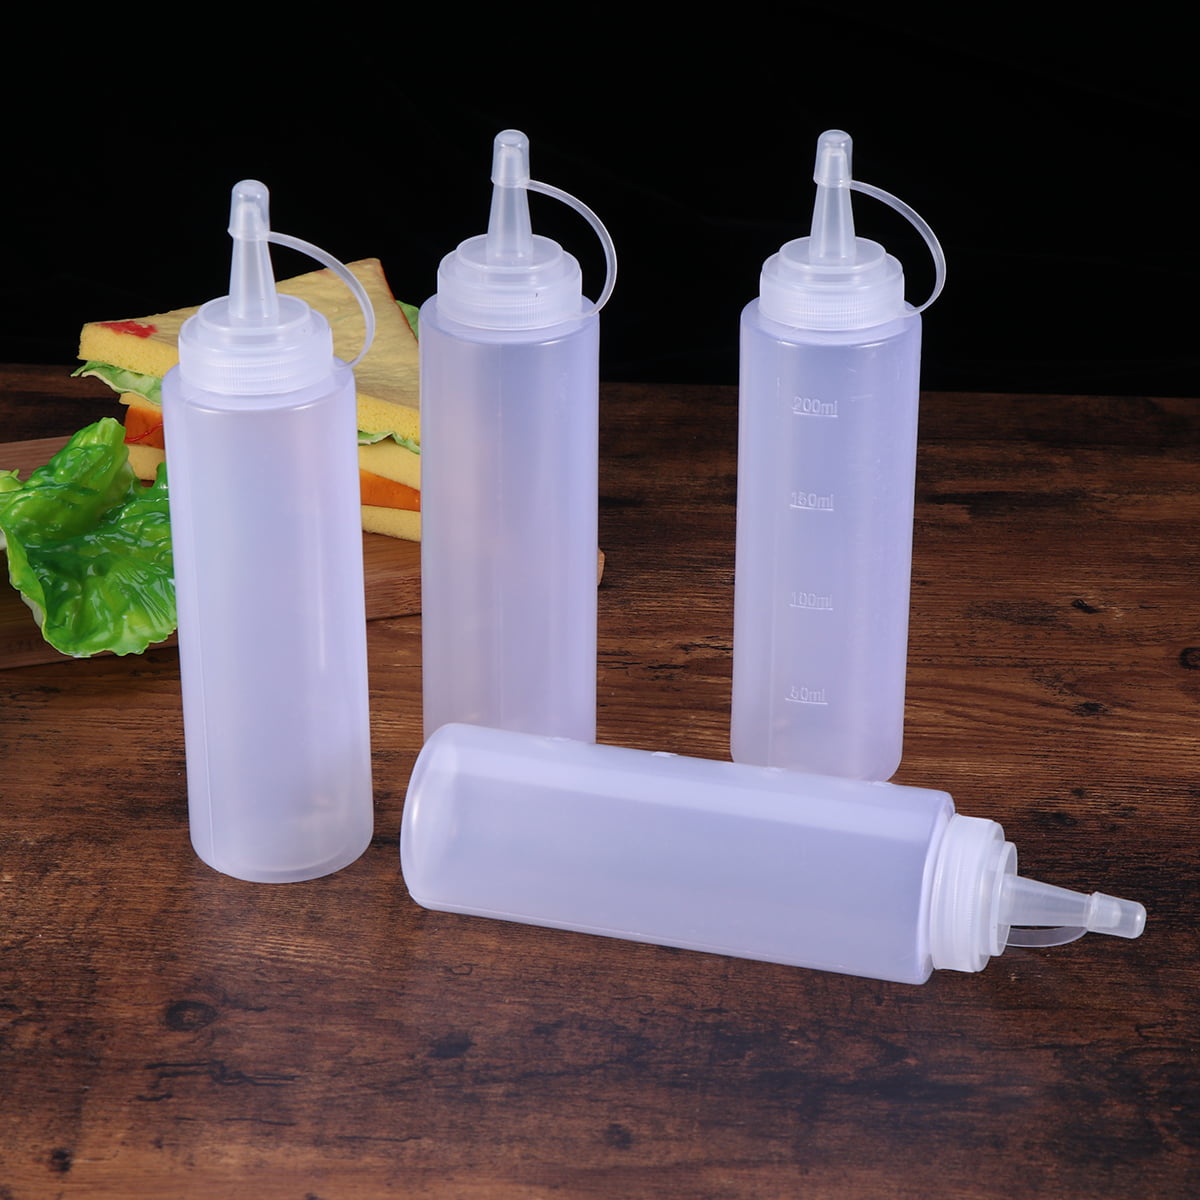 12pcs Salad Dressing Bottle Portable Convenient Practical Empty Bottles for Home 